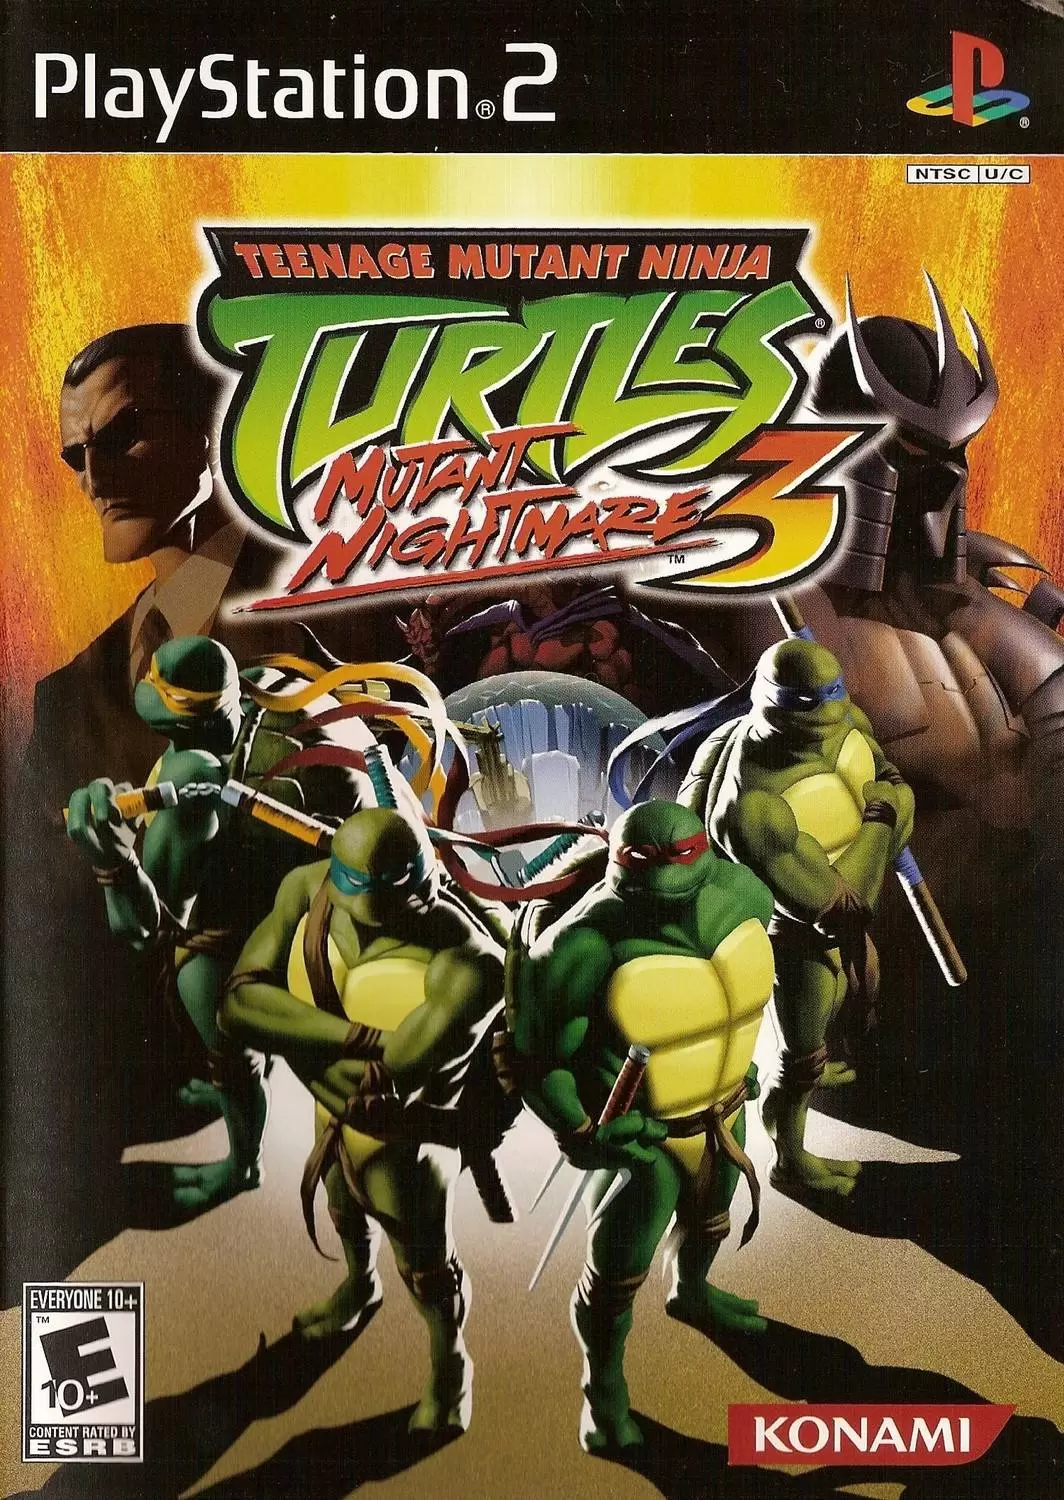 PS2 Games - Teenage Mutant Ninja Turtles 3: Mutant Nightmare